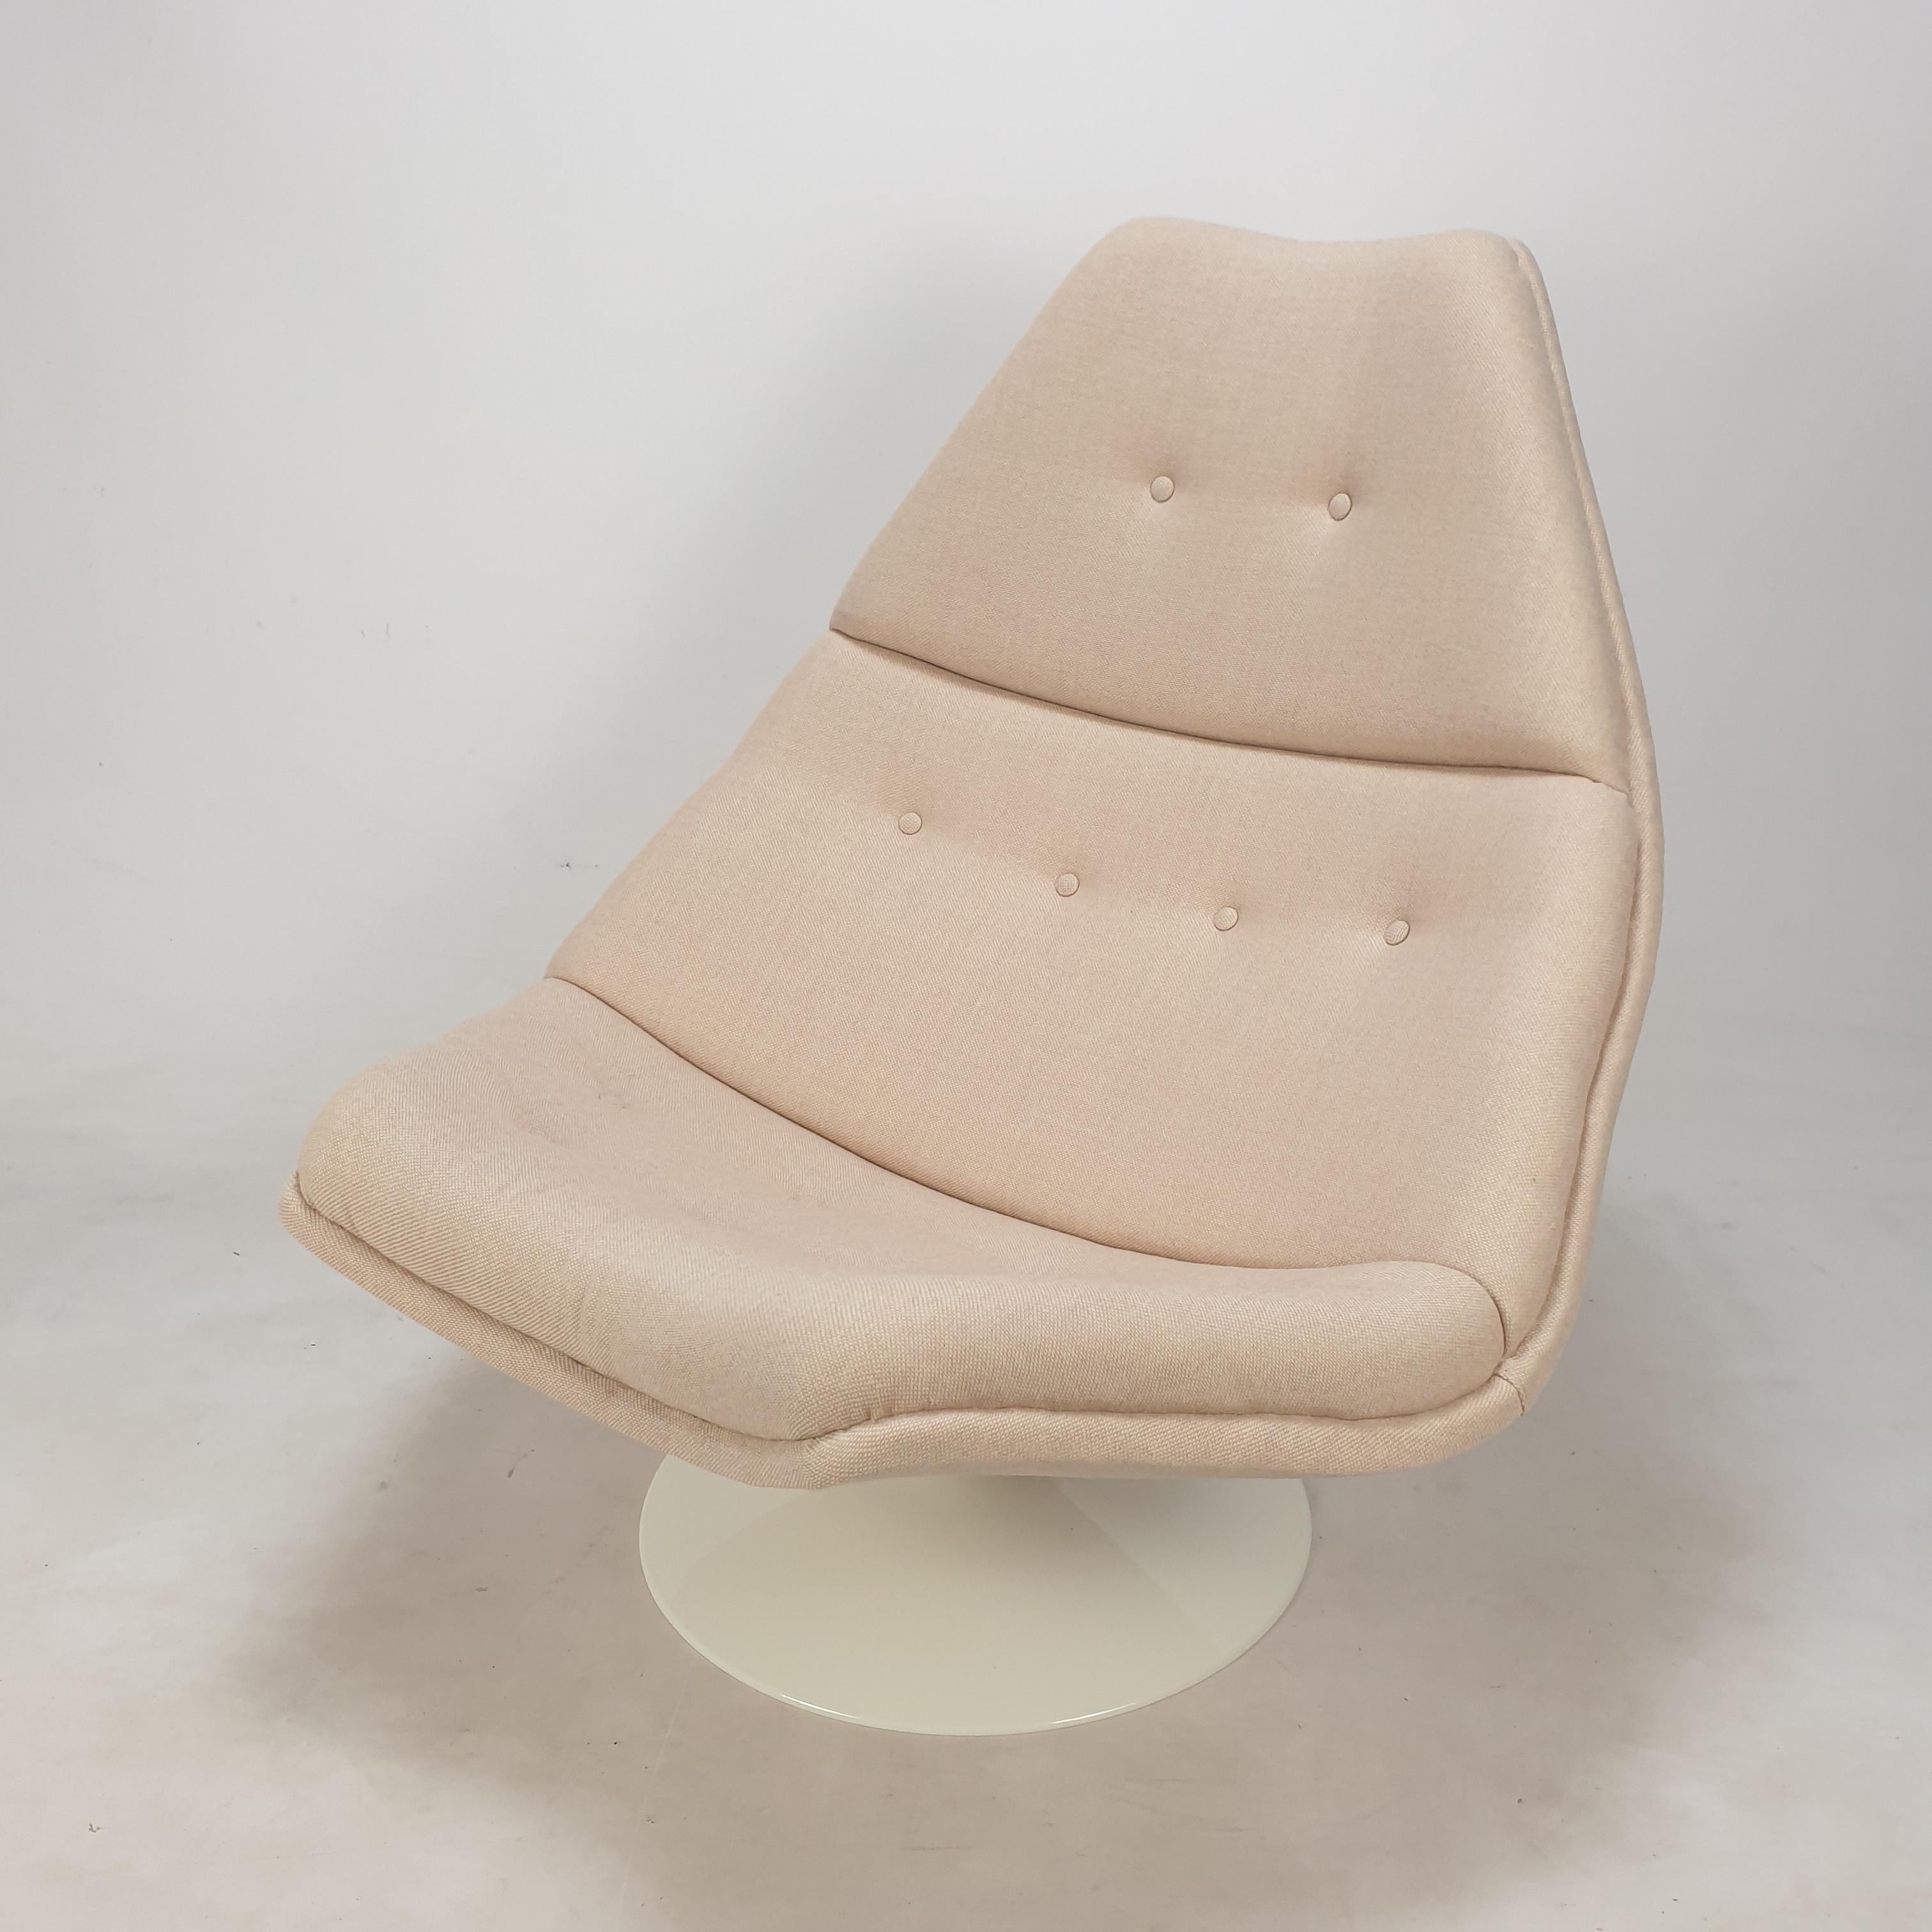 Sehr bequemer Artifort Sessel. 
Entworfen von dem berühmten englischen Designer Geoffrey Harcourt in den 60er Jahren. 

Der Stuhl wurde gerade mit neuem Stoff und neuem Schaumstoff restauriert.
Er ist mit einem sehr schönen Wollstoff neu